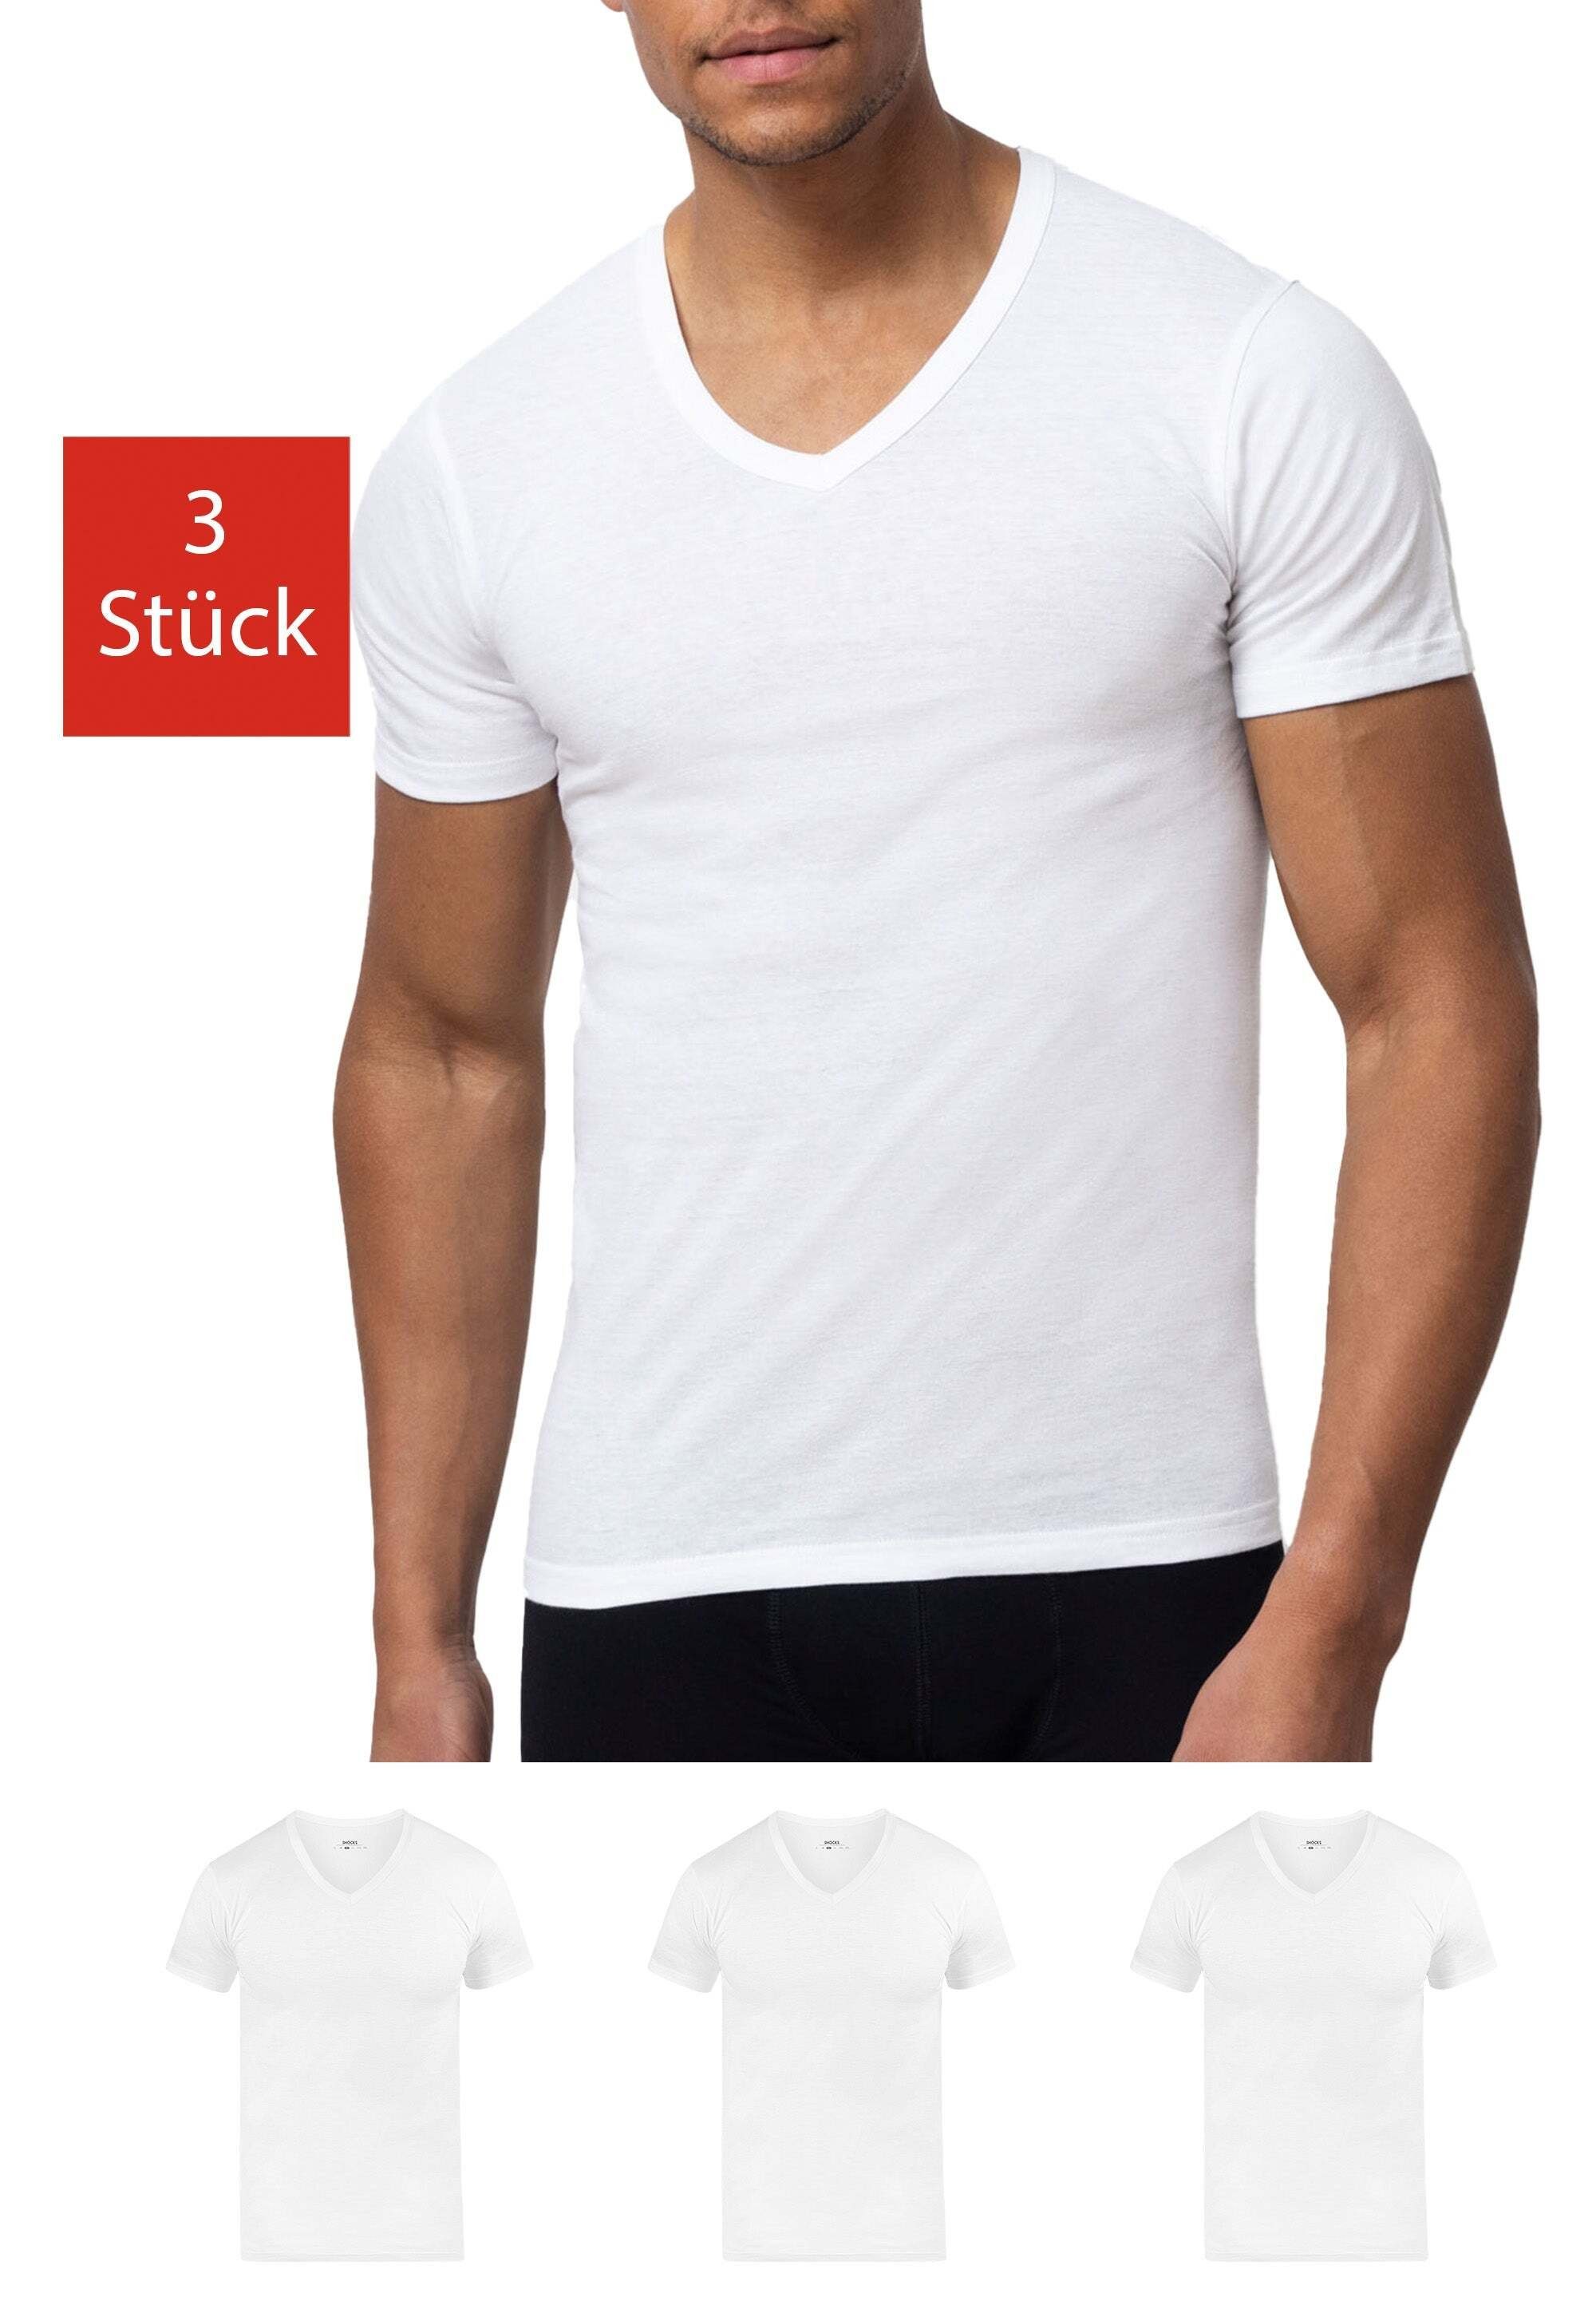 SNOCKS Unterziehshirt T Shirt mit V-Ausschnitt Unterhemden Herren (3 Stück, 3-St) aus Bio-Baumwolle, extra lang geschnitten Weiß